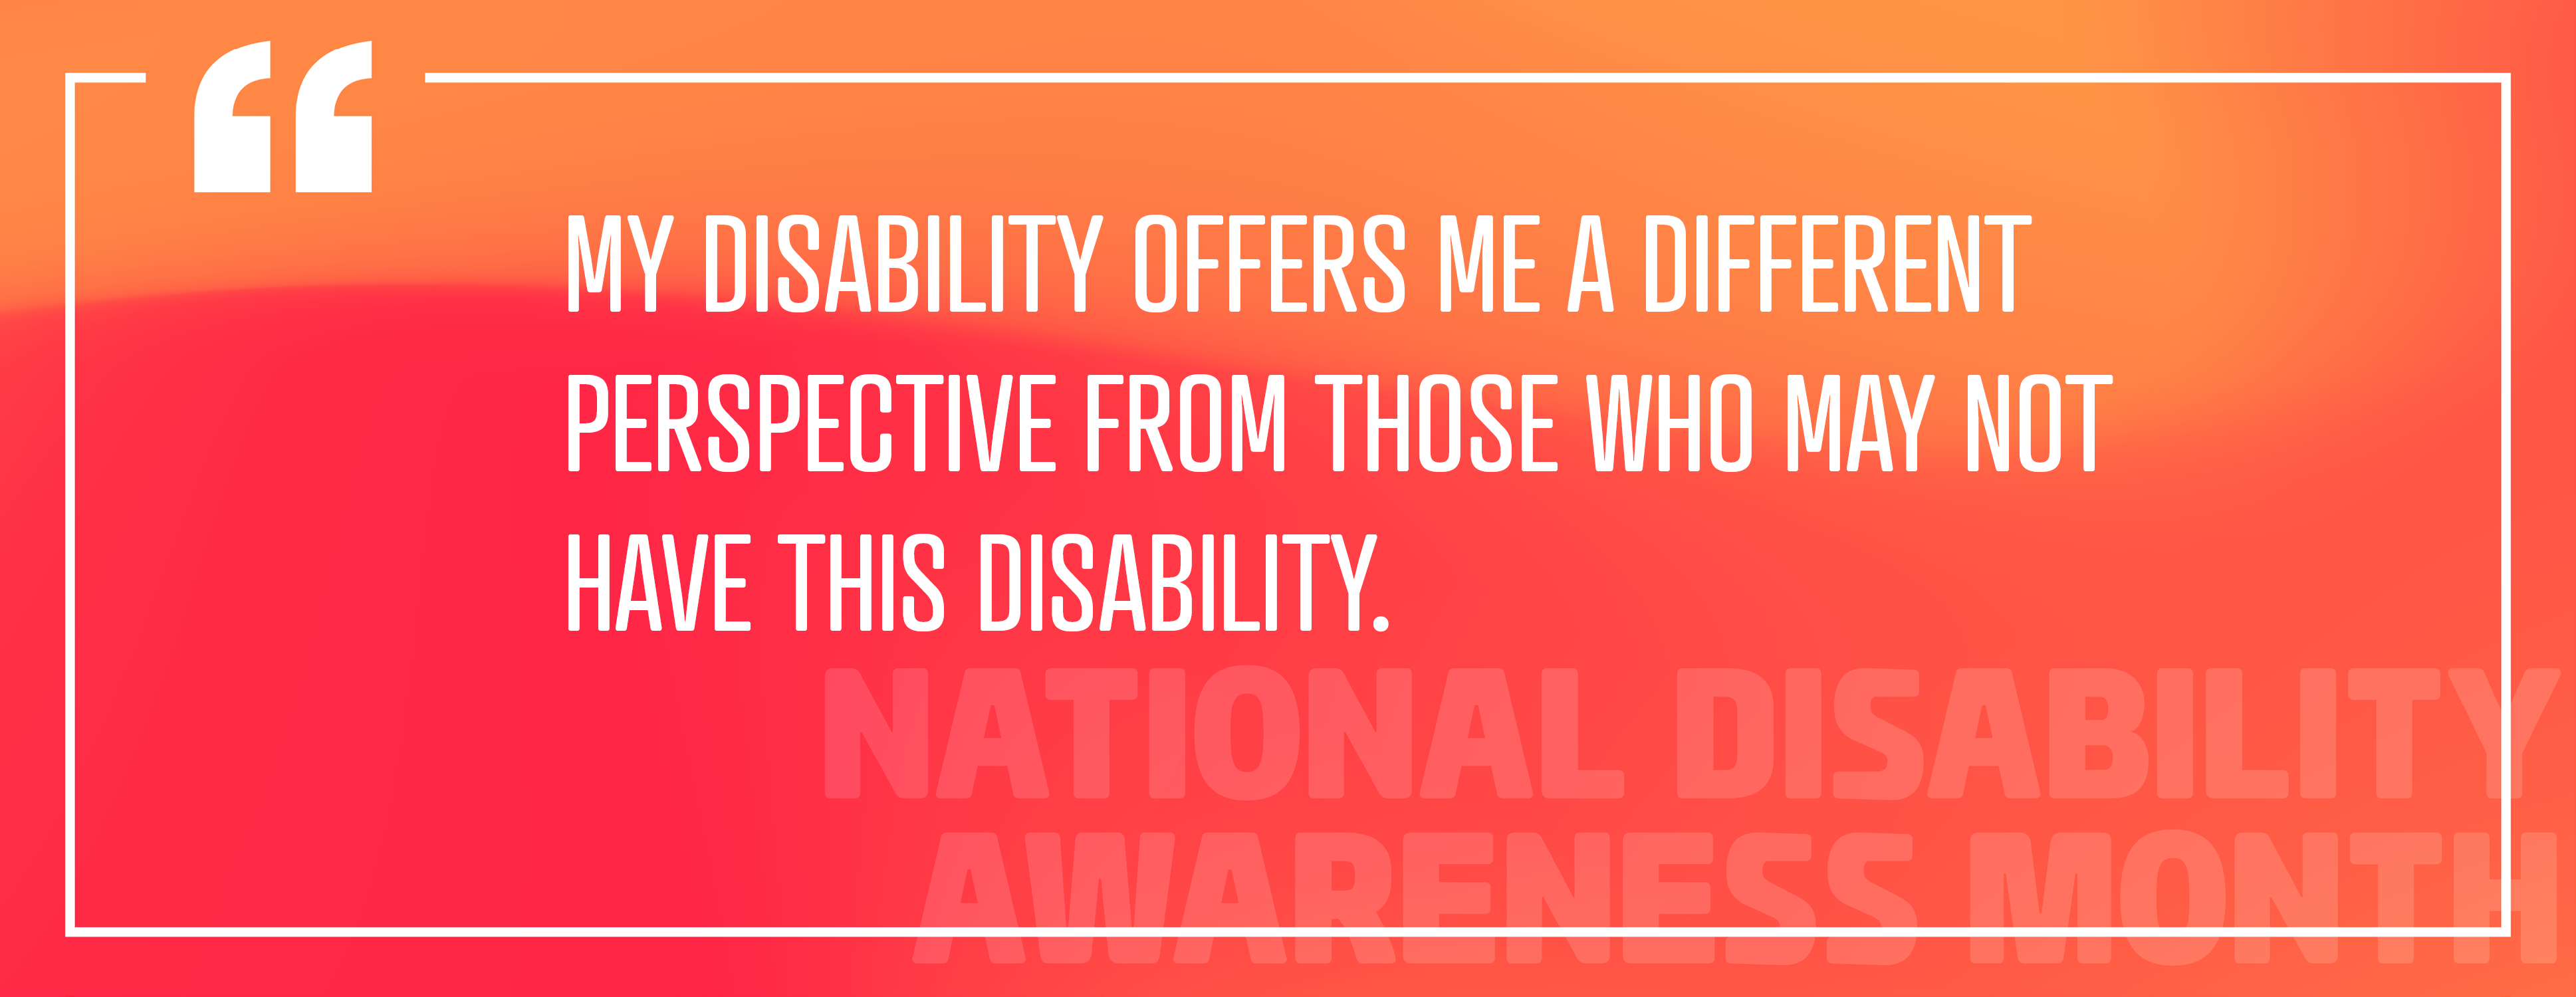 Immagine 2: "La mia disabilità mi offre una prospettiva diversa rispetto a coloro che potrebbero non avere questa disabilità."